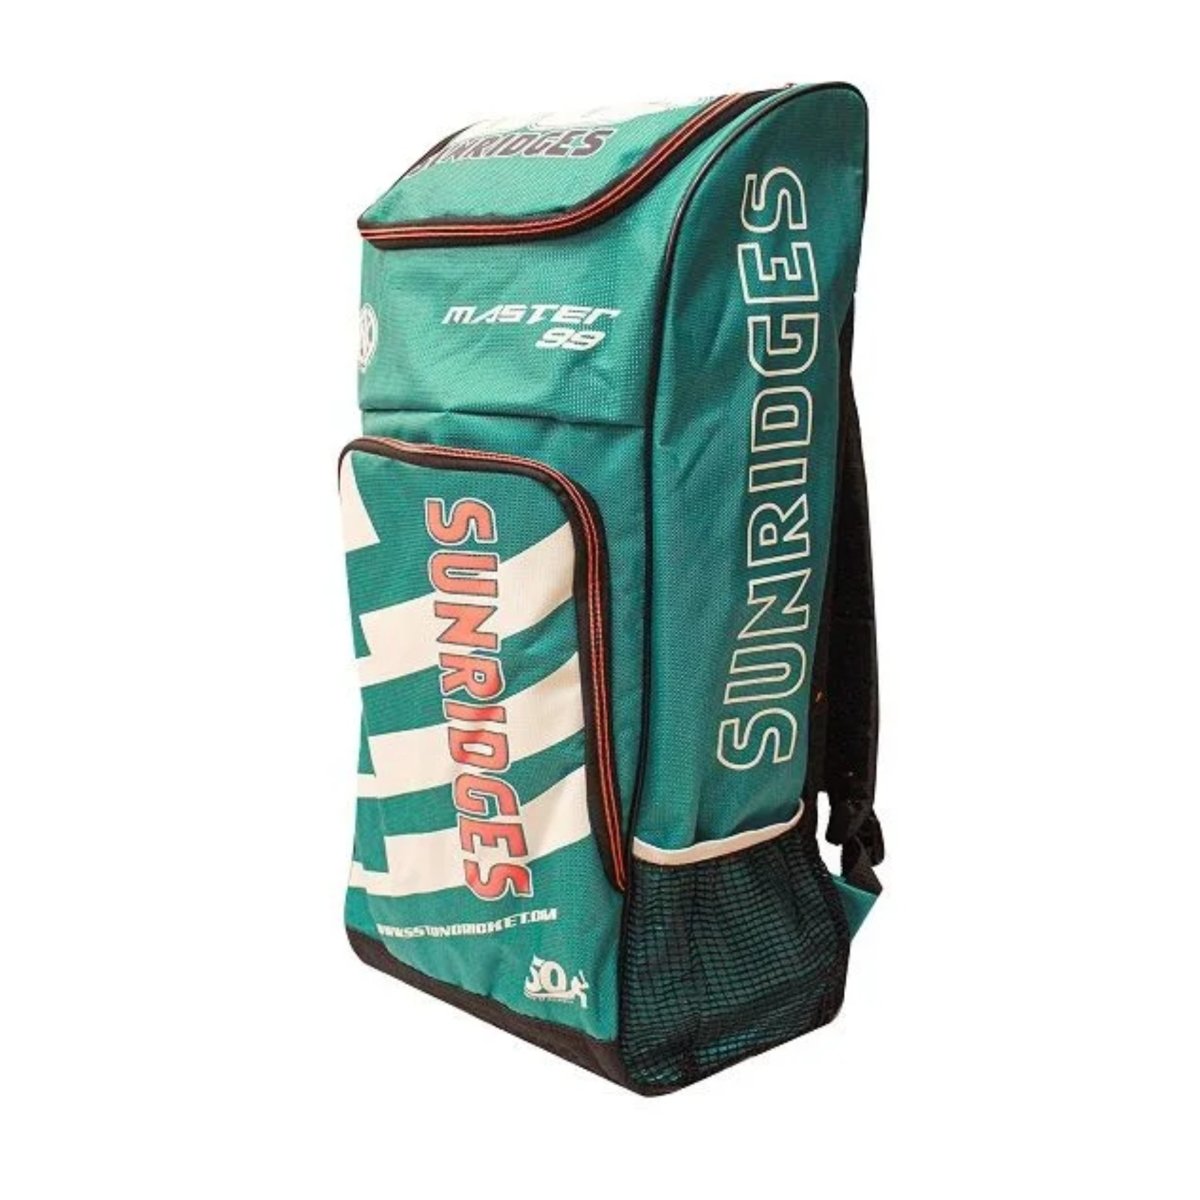 SS Master 99 Cricket Kit Bag - Acrux Sports